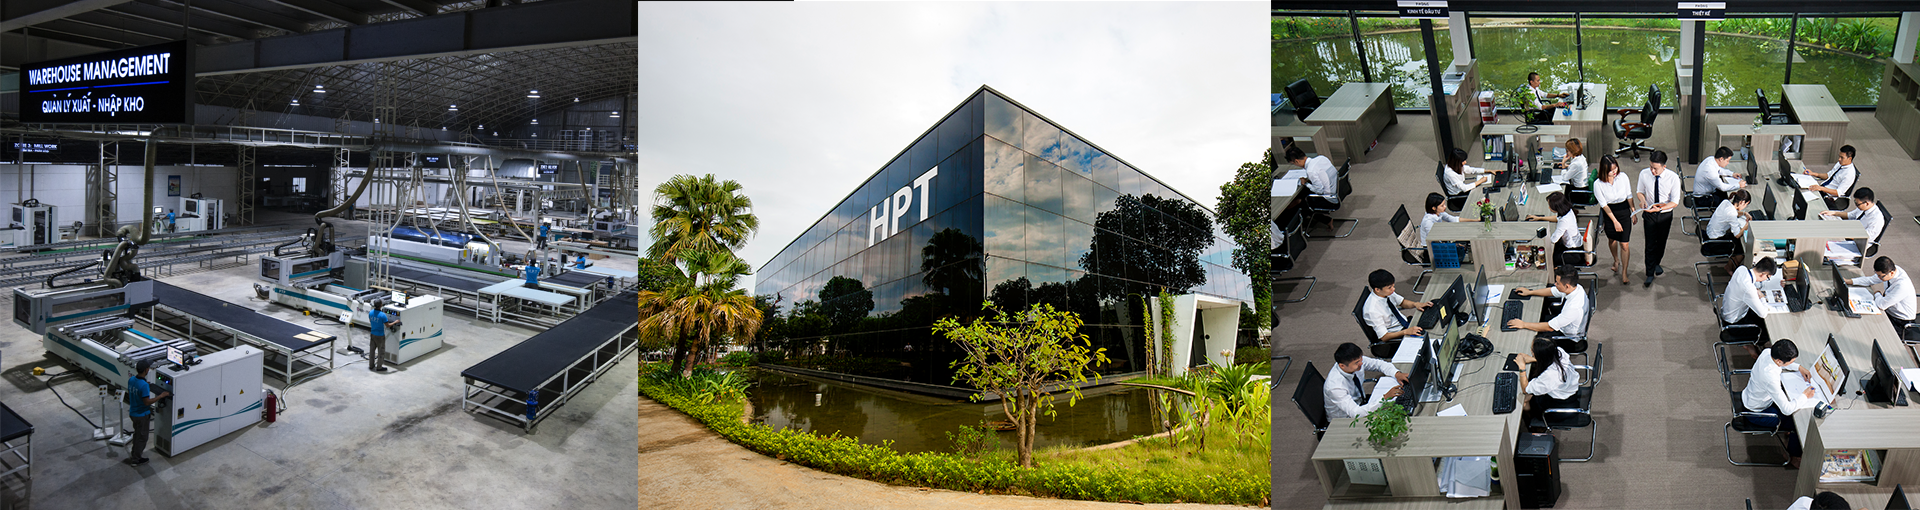 Công ty TNHH Đầu tư phát triển Vật liệu mới và Công nghệ cao H.P.T hoặc Showroom Avyinterior